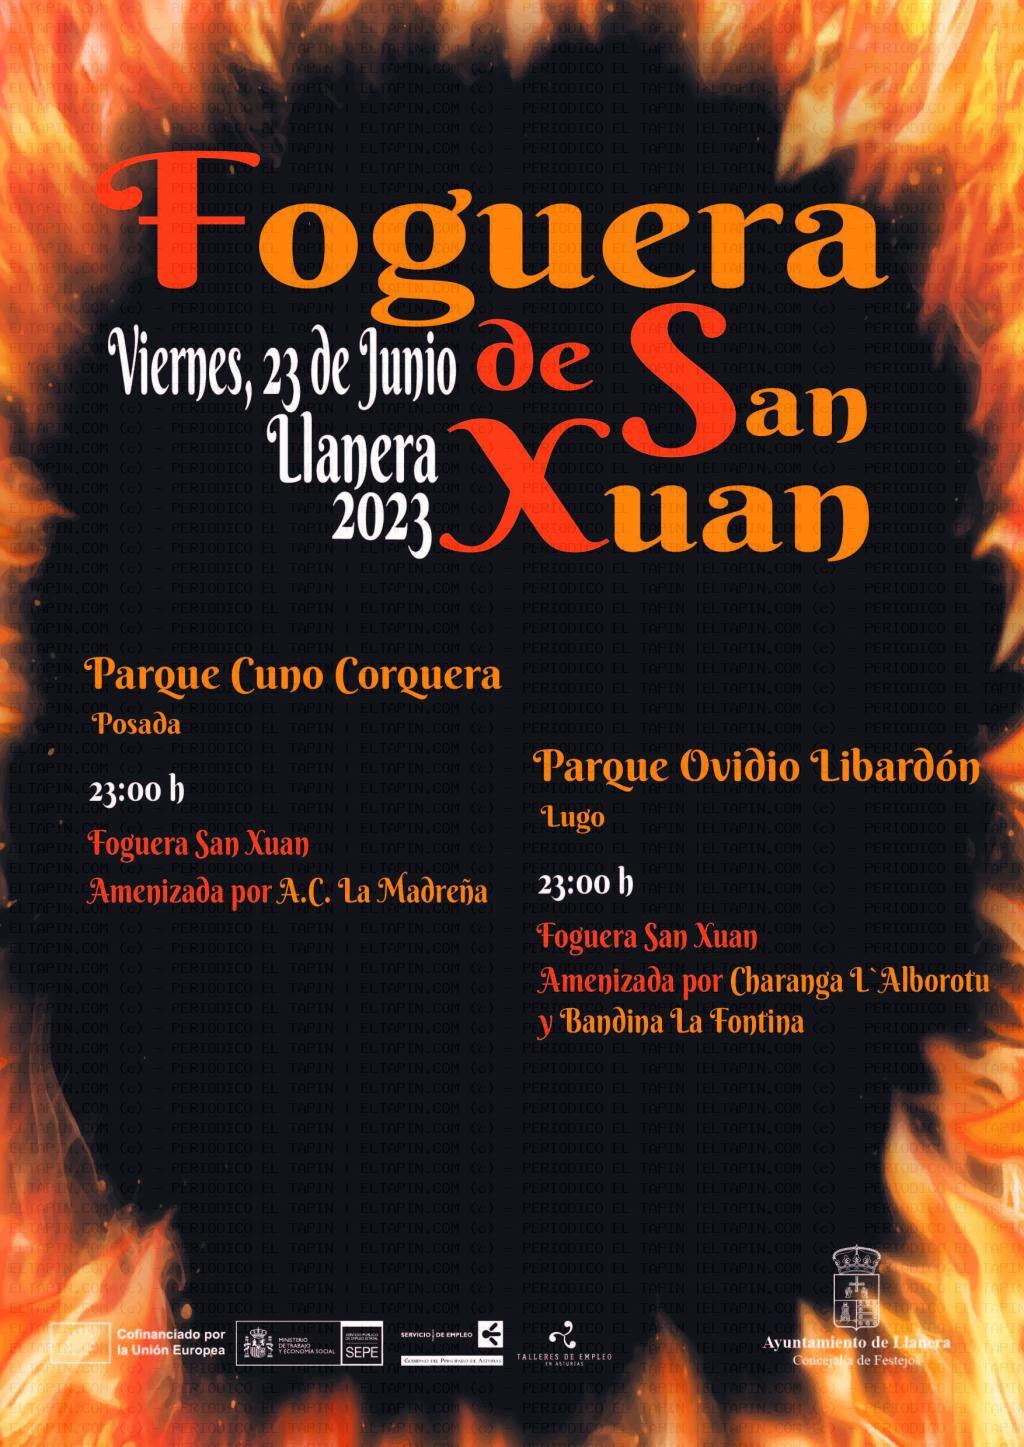 El Tapin - Llanera celebra la Hoguera de San Juan el viernes a las 23 horas en Lugo y Posada